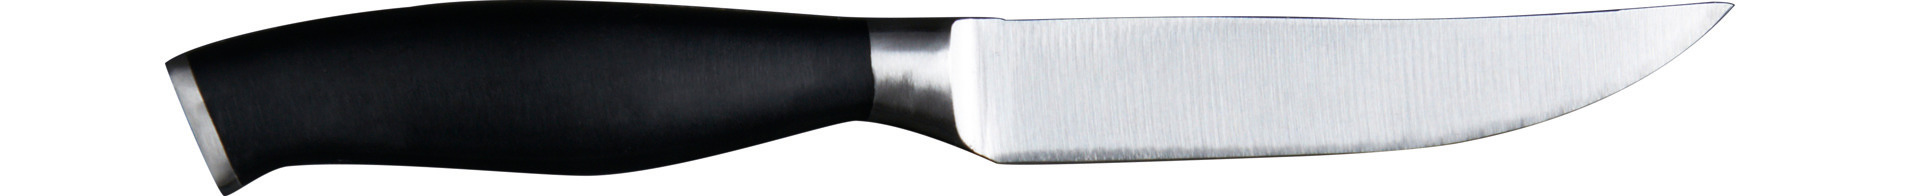 Steakmesser 240 mm geschliffene Klinge schwarzer Kunststoffgriff